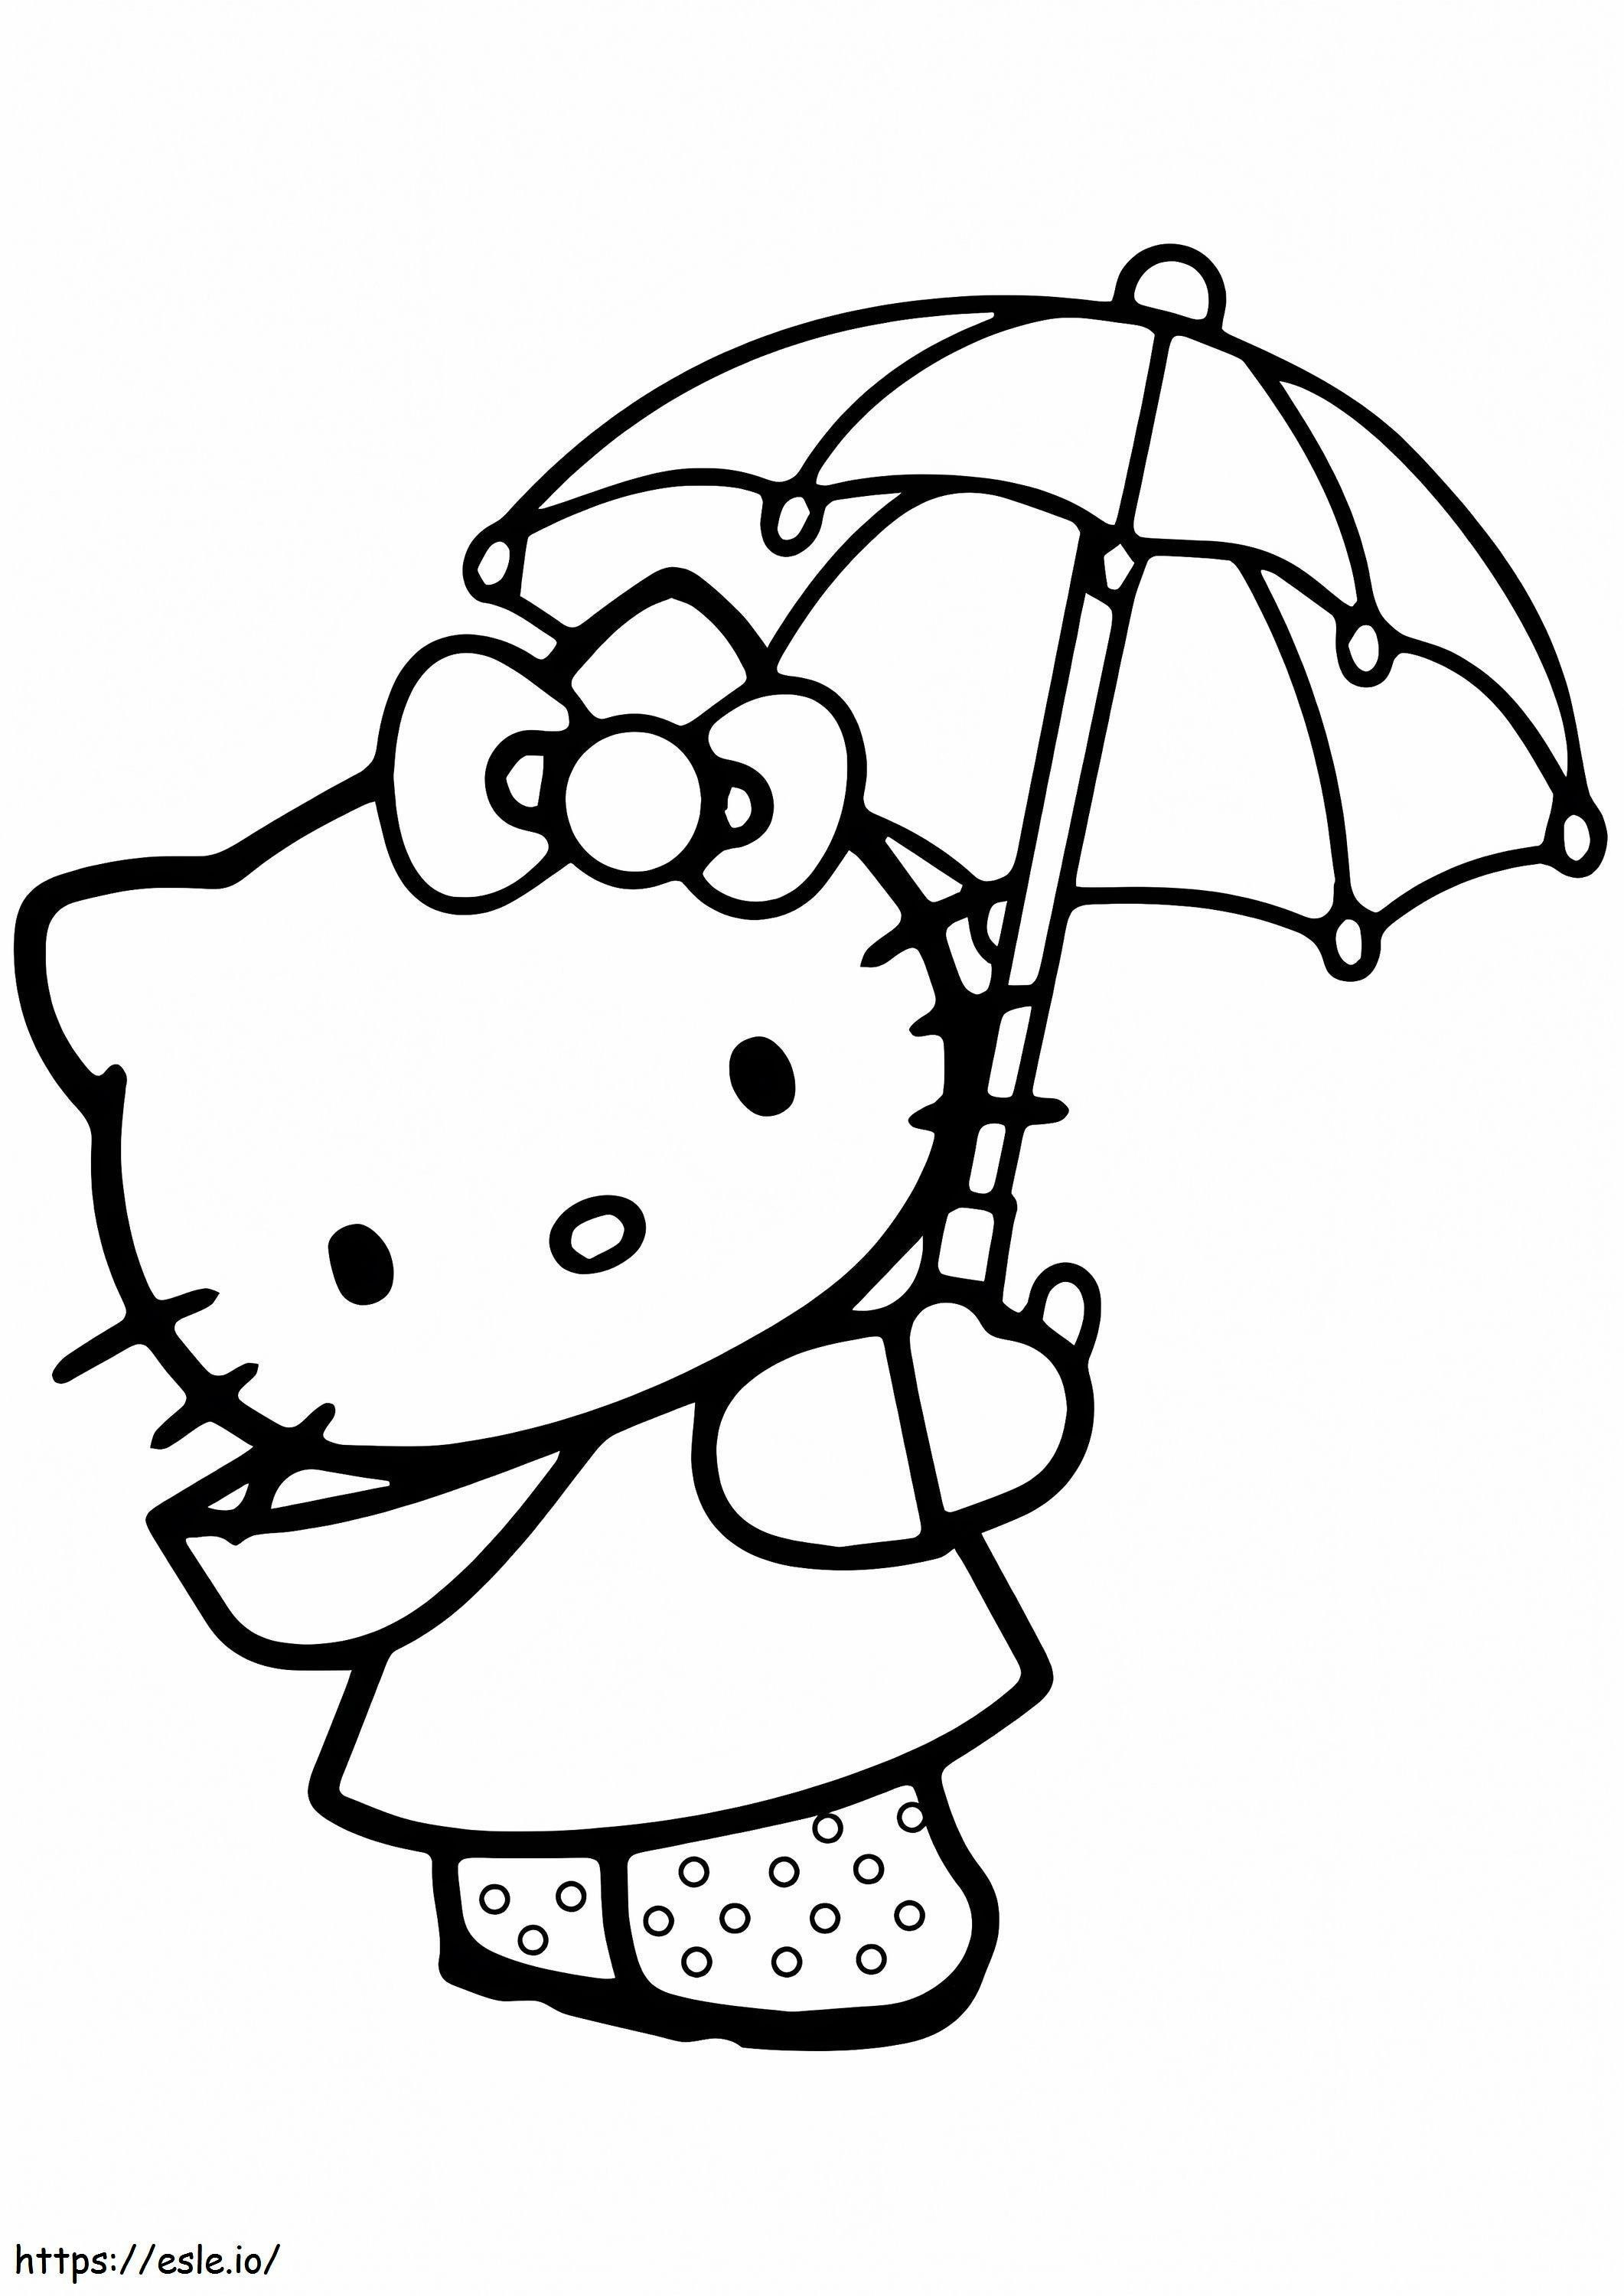 Şemsiyeli Hello Kitty boyama